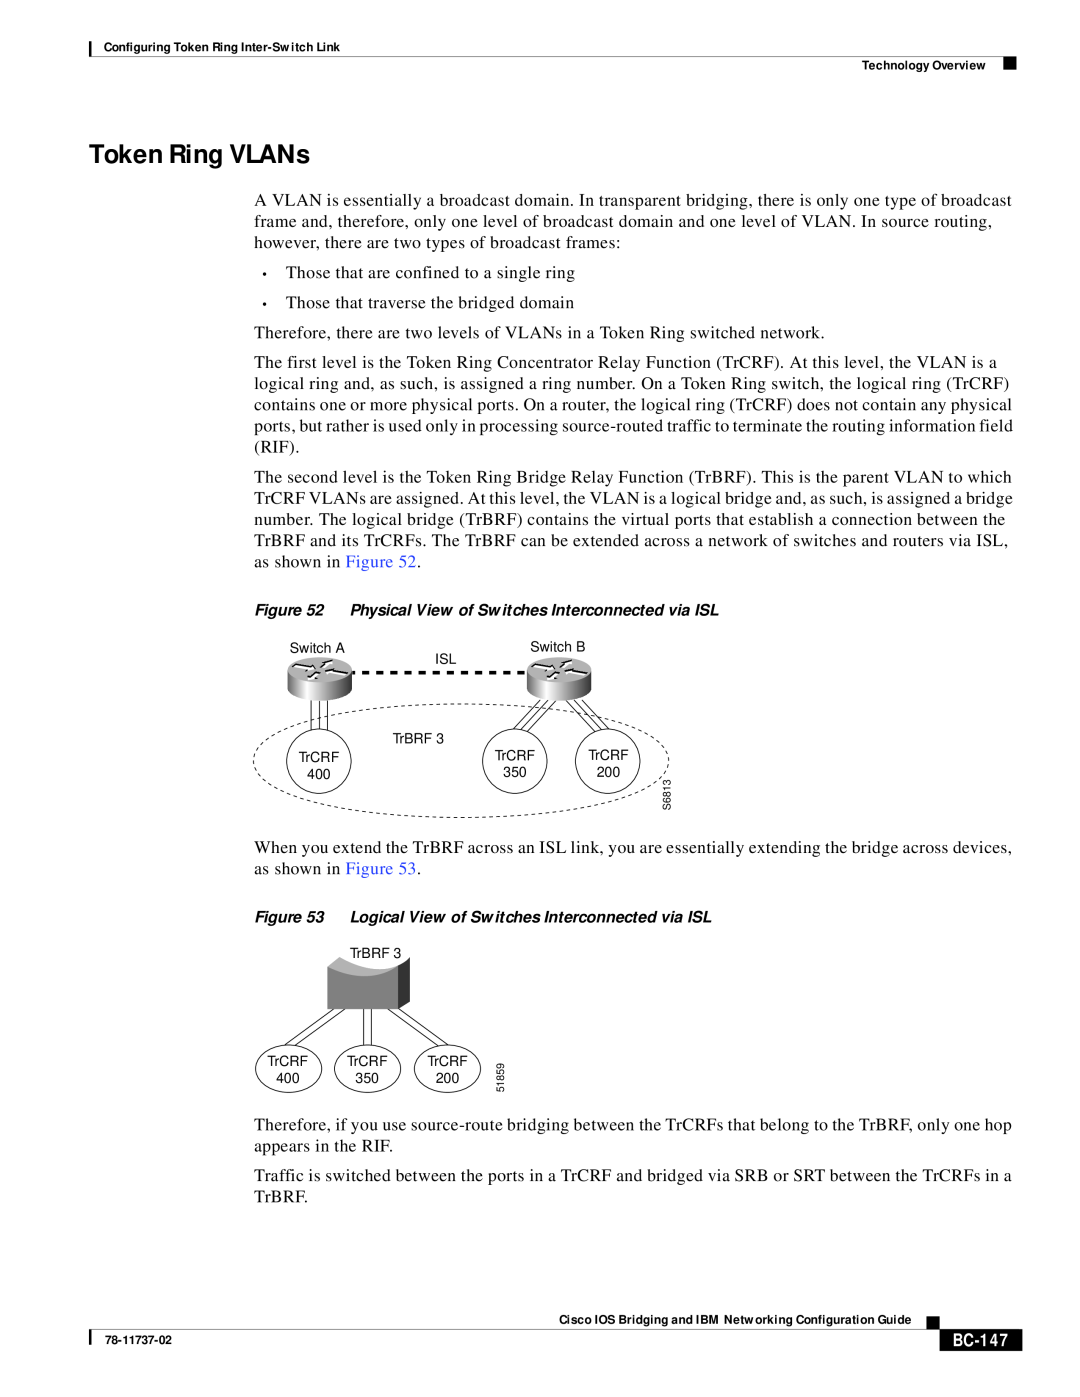 Cisco Systems BC-145 manual Token Ring VLANs, BC-147 